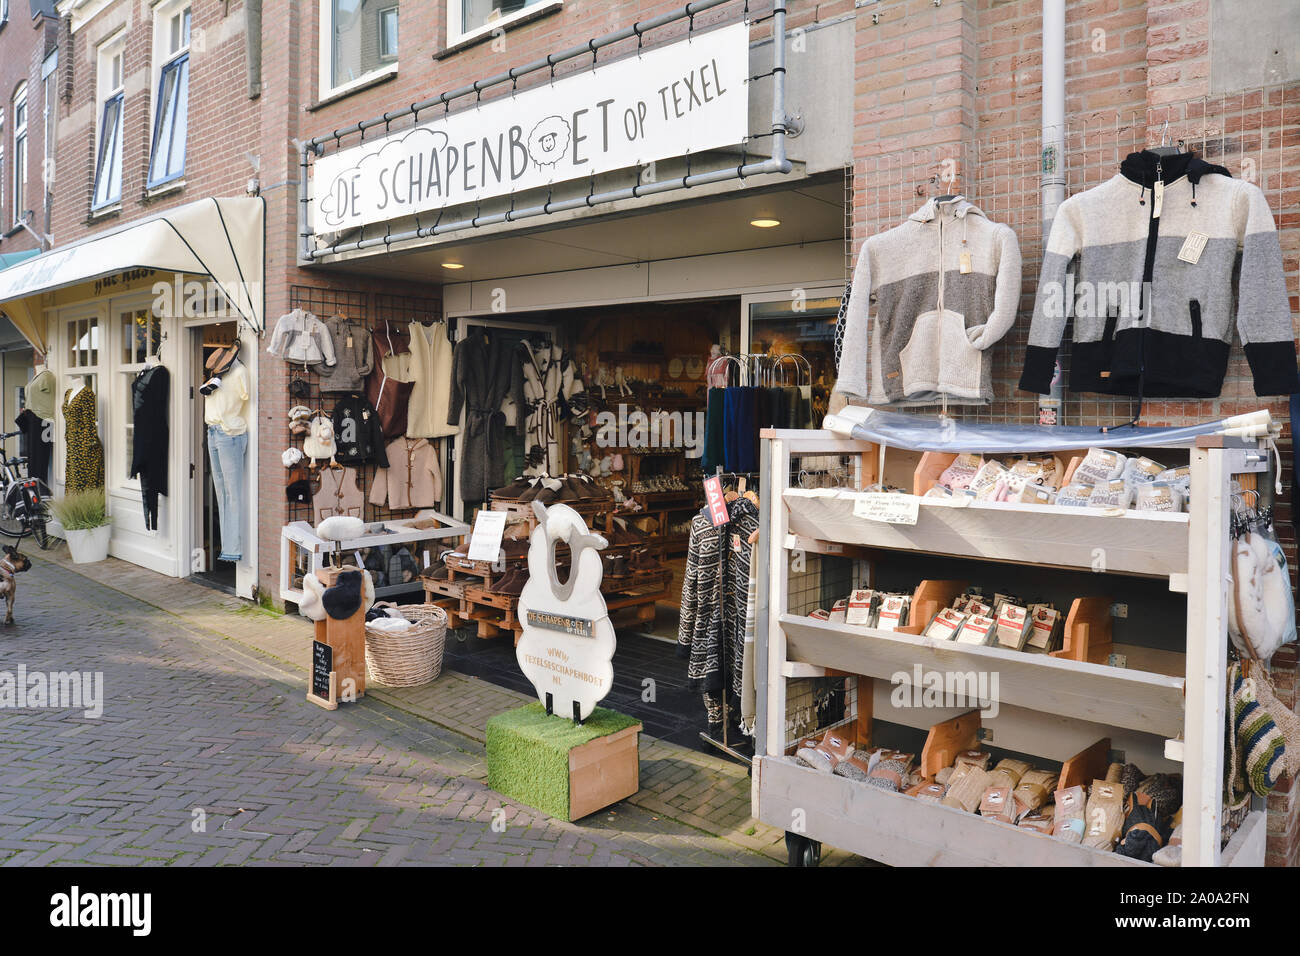 Den Burg, Texel / nel nord dei Paesi Bassi - Agosto 2019: Tourist shop 'De Schapenboet' di vendita di prodotti locali come vestiti fatti di lana di pecora di Texel Foto Stock